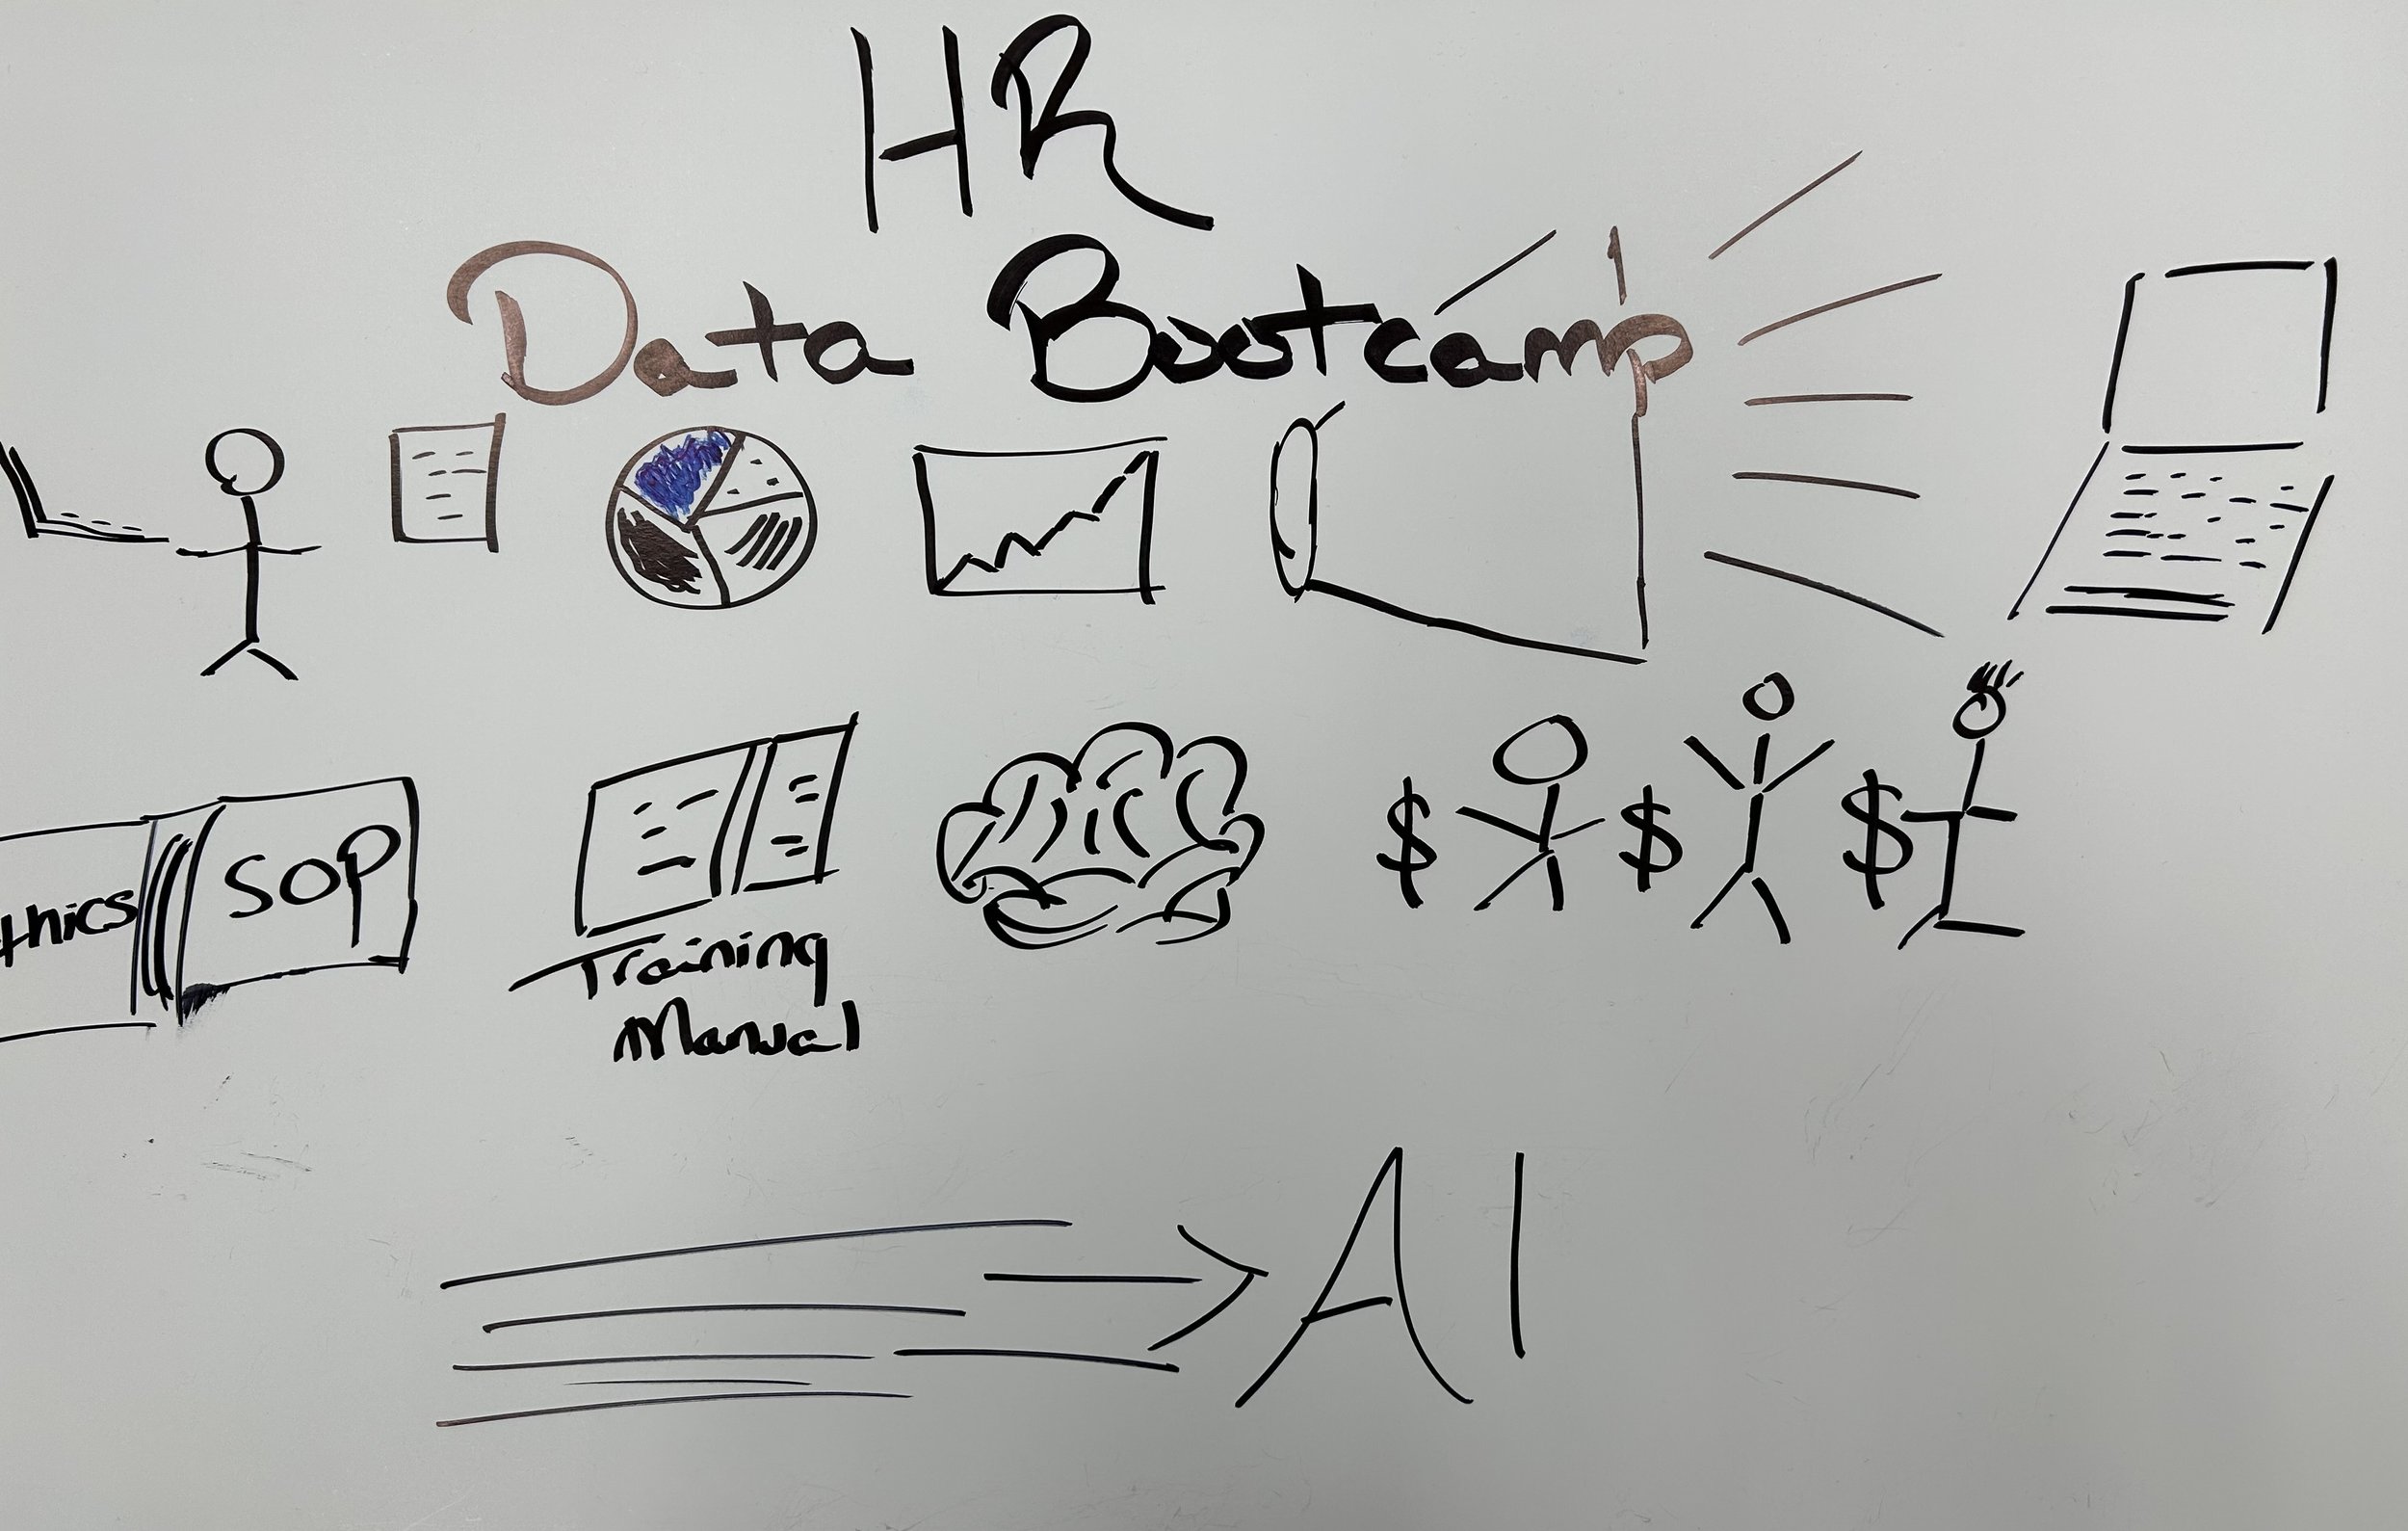 HR DATA BOOTCAMP